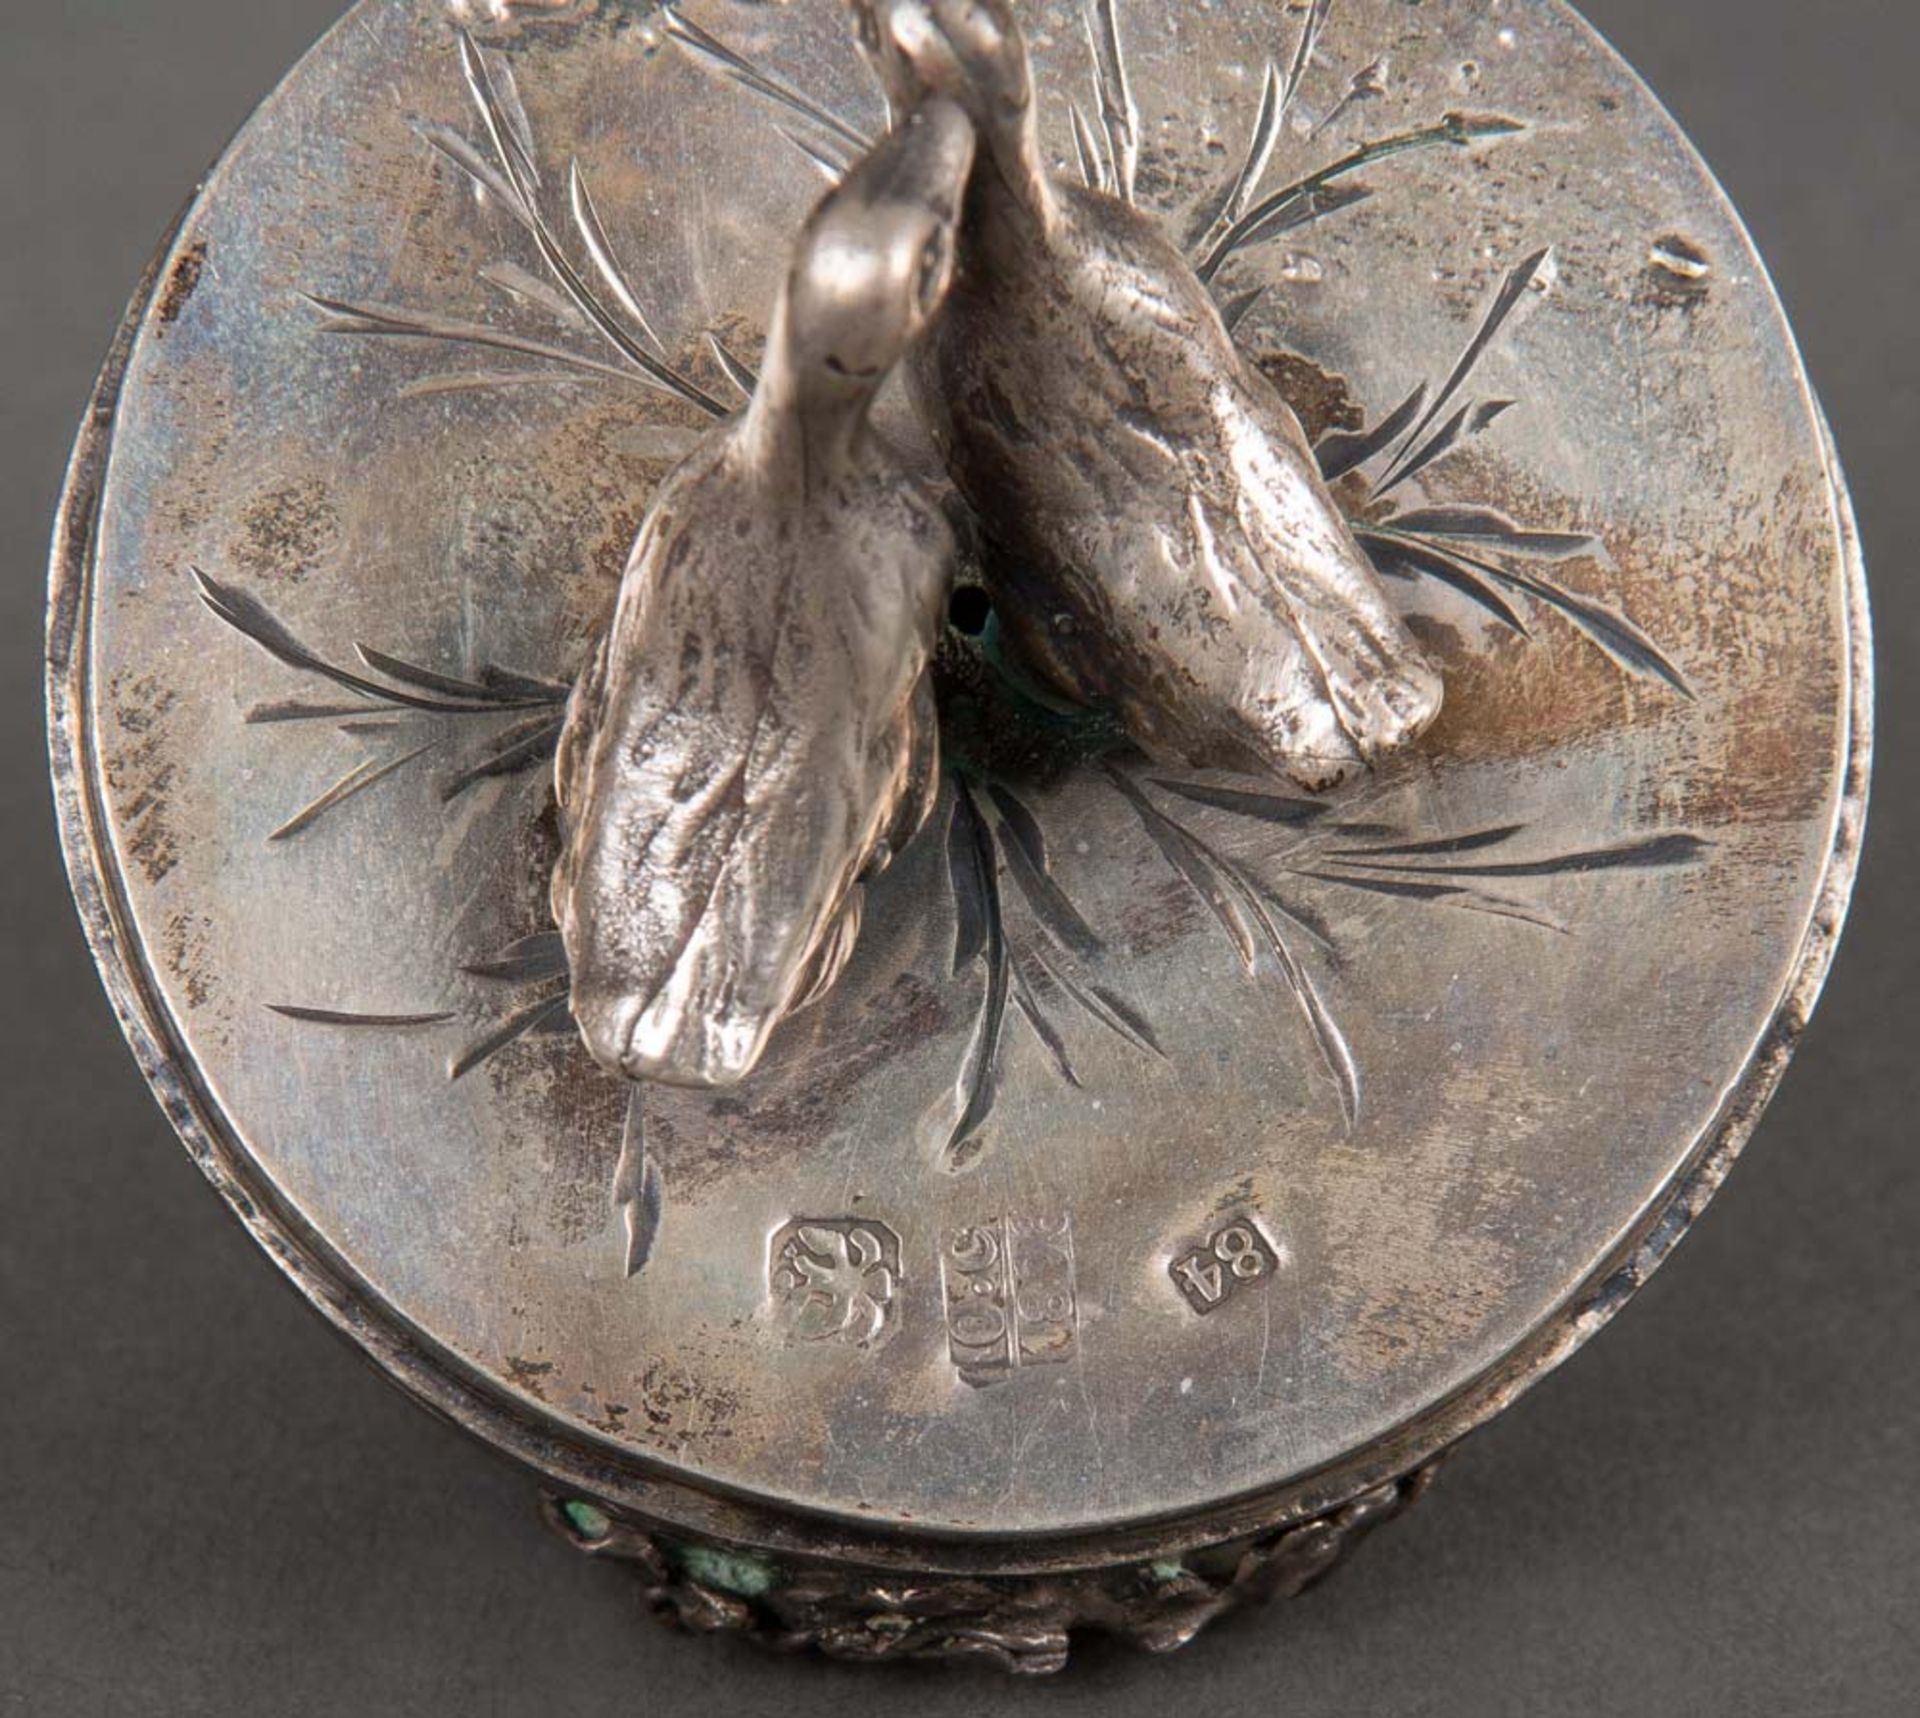 Zierei auf dreibeinigem Gestell. Moskau dat. 1806. 84er Silber, ziseliert, mit aufgelegten Blüten - Bild 3 aus 3